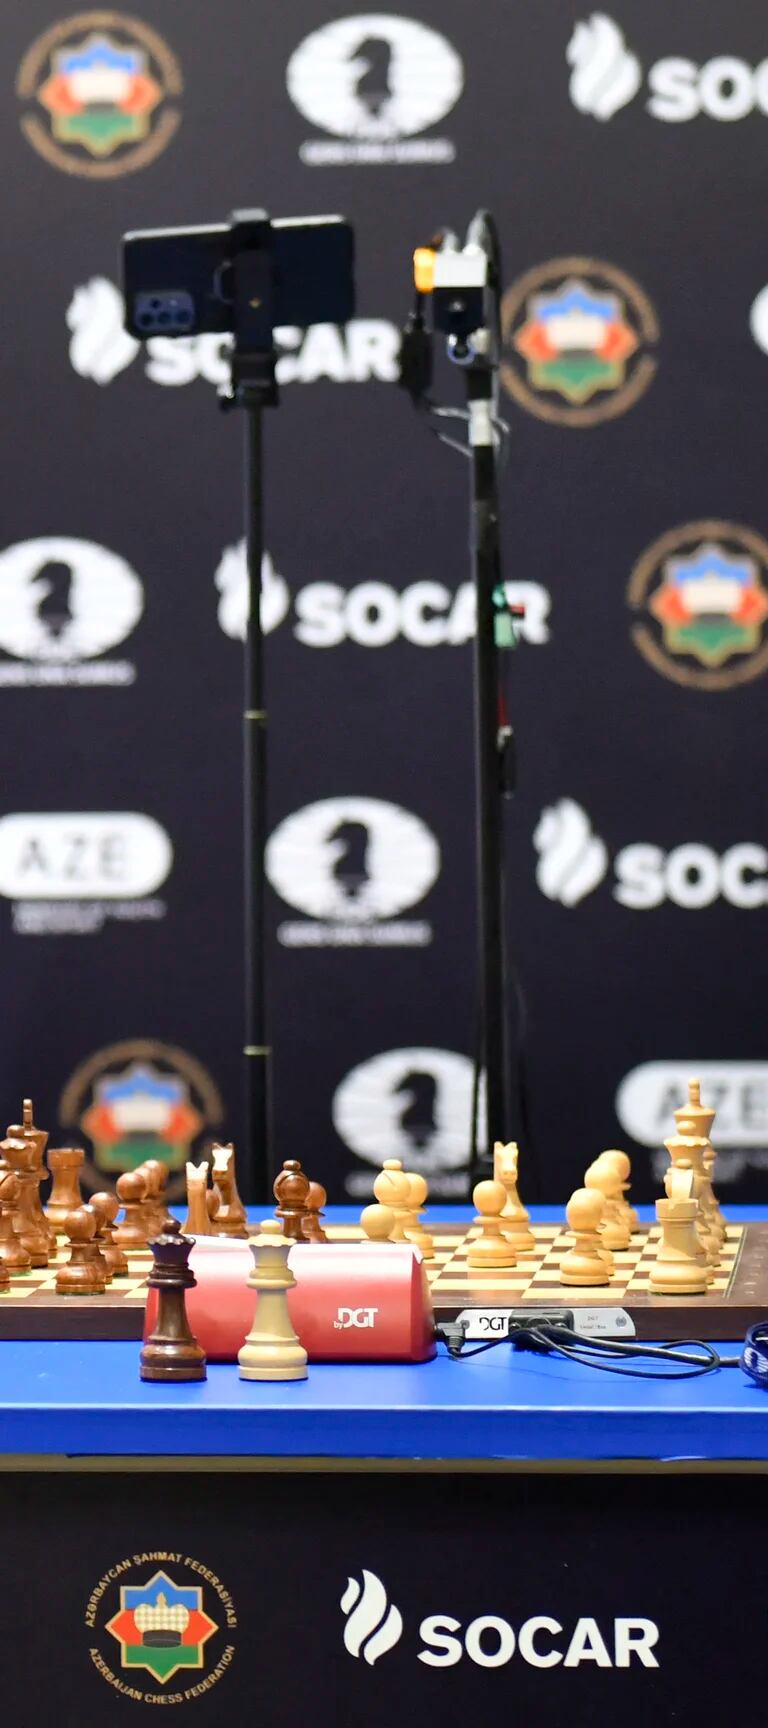 Lenda do xadrez, Magnus Carlsen vive incomum seca de títulos